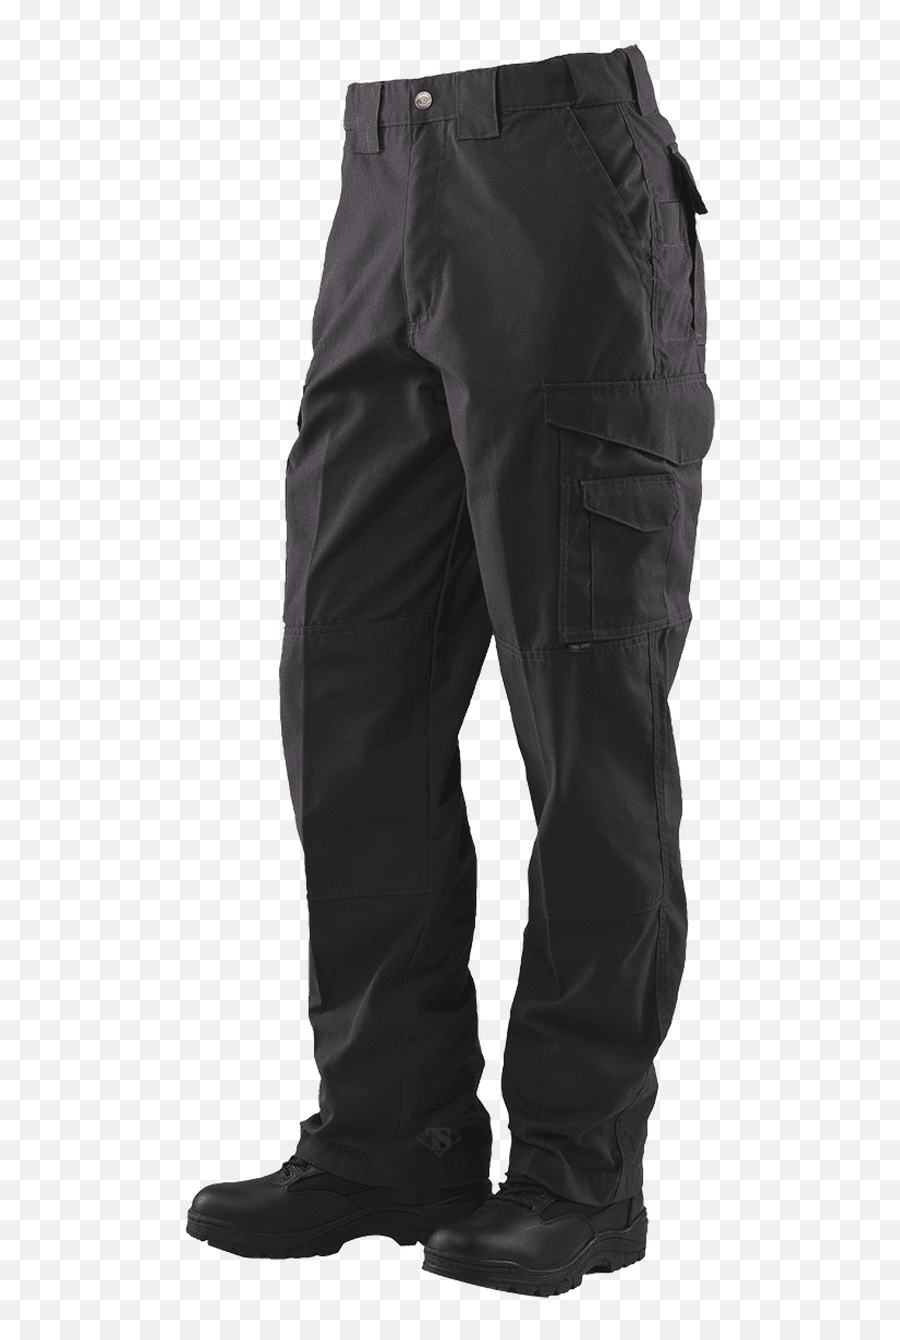 Original Tactical Pants - Tru Spec Tactical Pants Png,5.11 Icon Pant